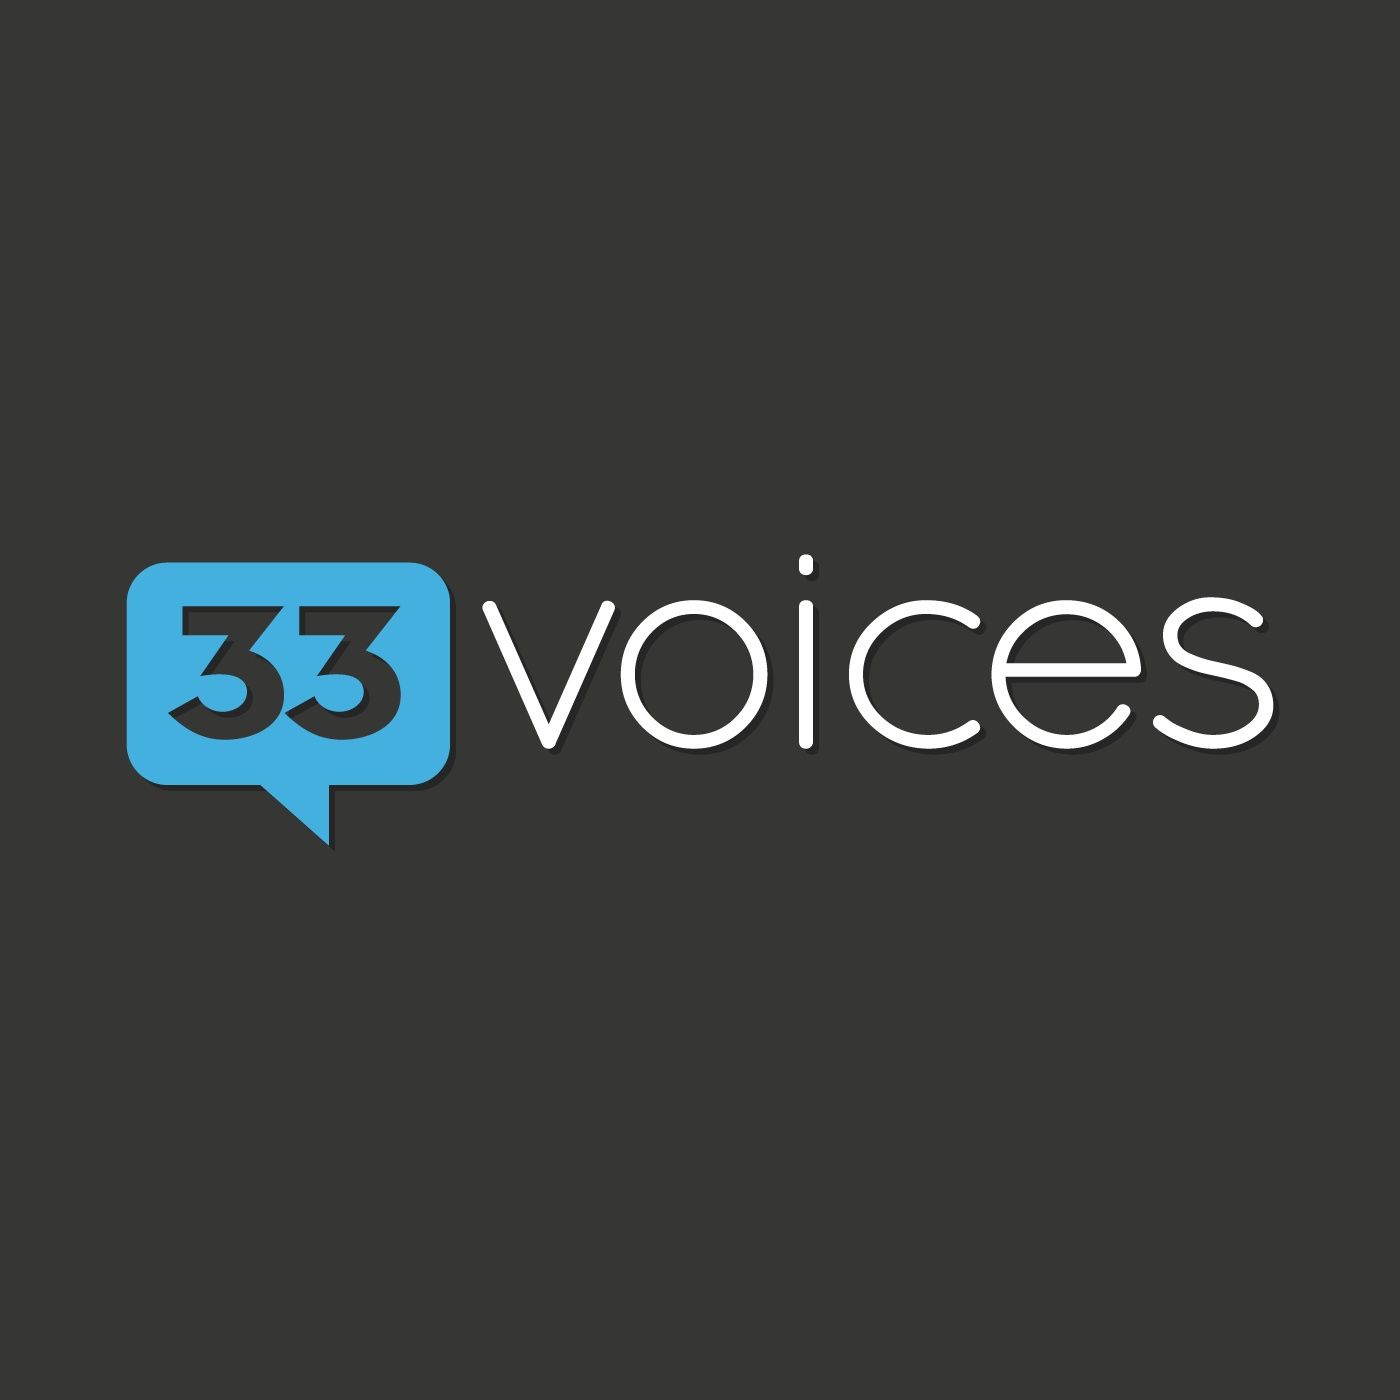 33voices